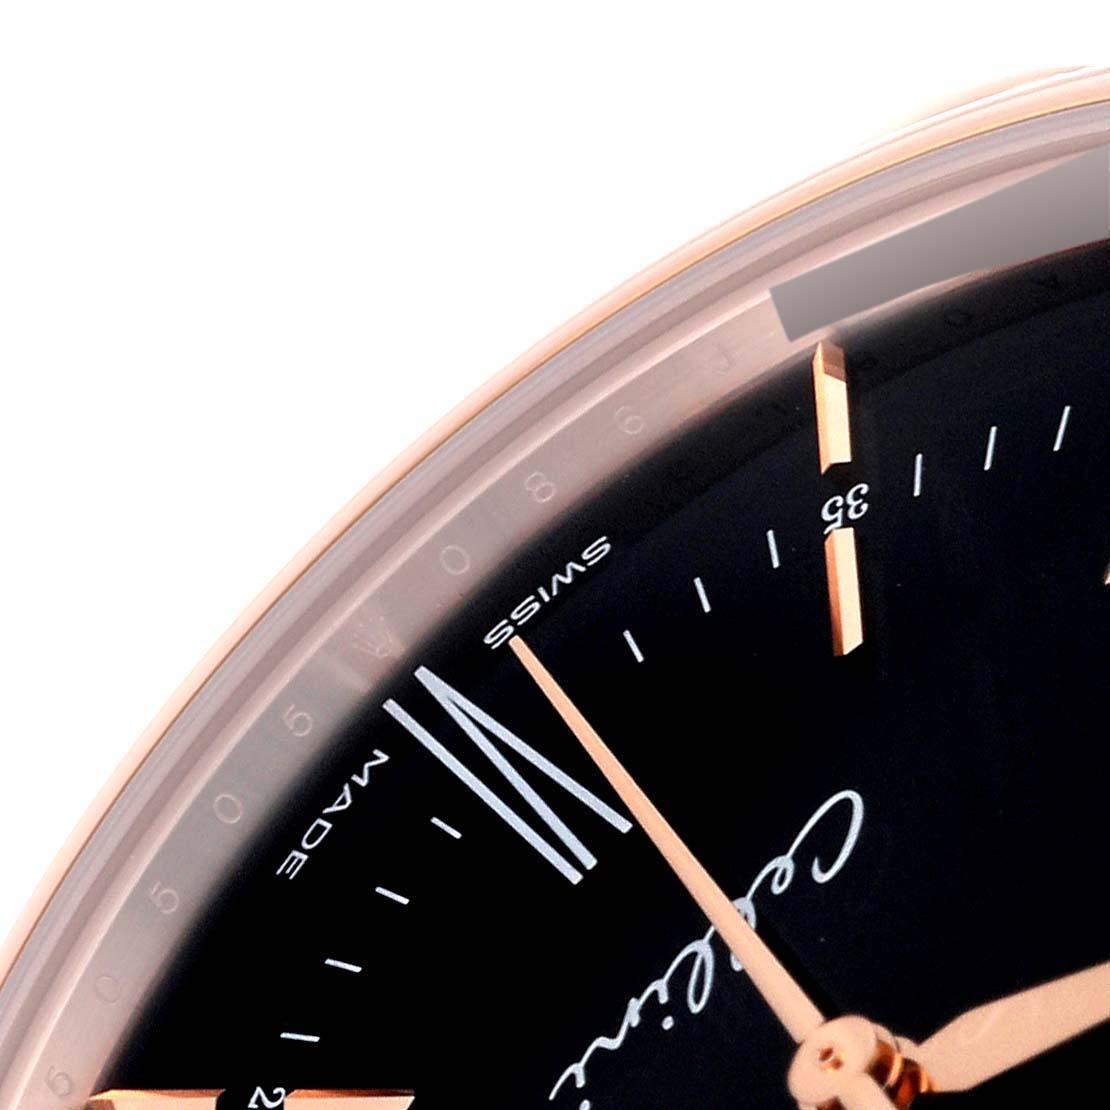 Rolex Cellini Time Rose Gold Schwarzes Zifferblatt Herrenuhr 50505 Karte. Automatisches Uhrwerk mit Selbstaufzug. Offiziell zertifizierter Schweizer Chronometer (COSC). Paramagnetische blaue Parachrom-Spirale. Bidirektionaler Automatikaufzug über